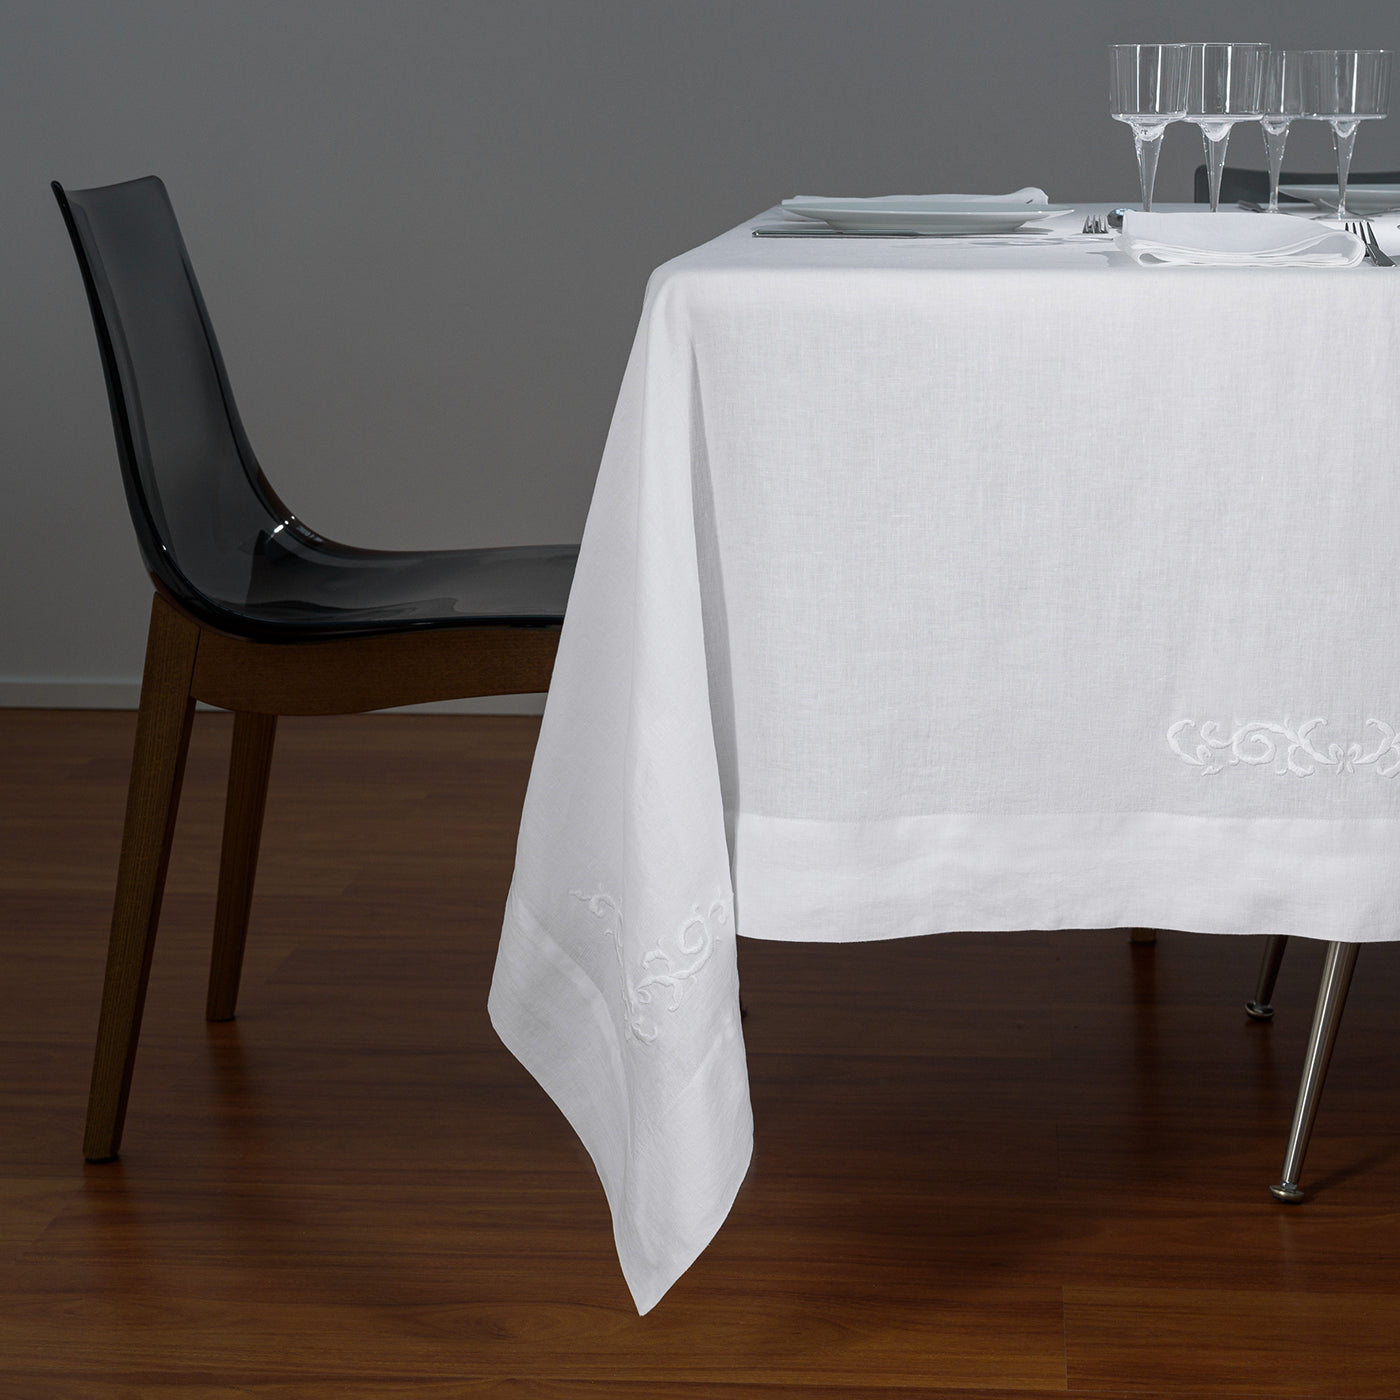 Decoro Embroidered White Tablecloth - Alternative view 4